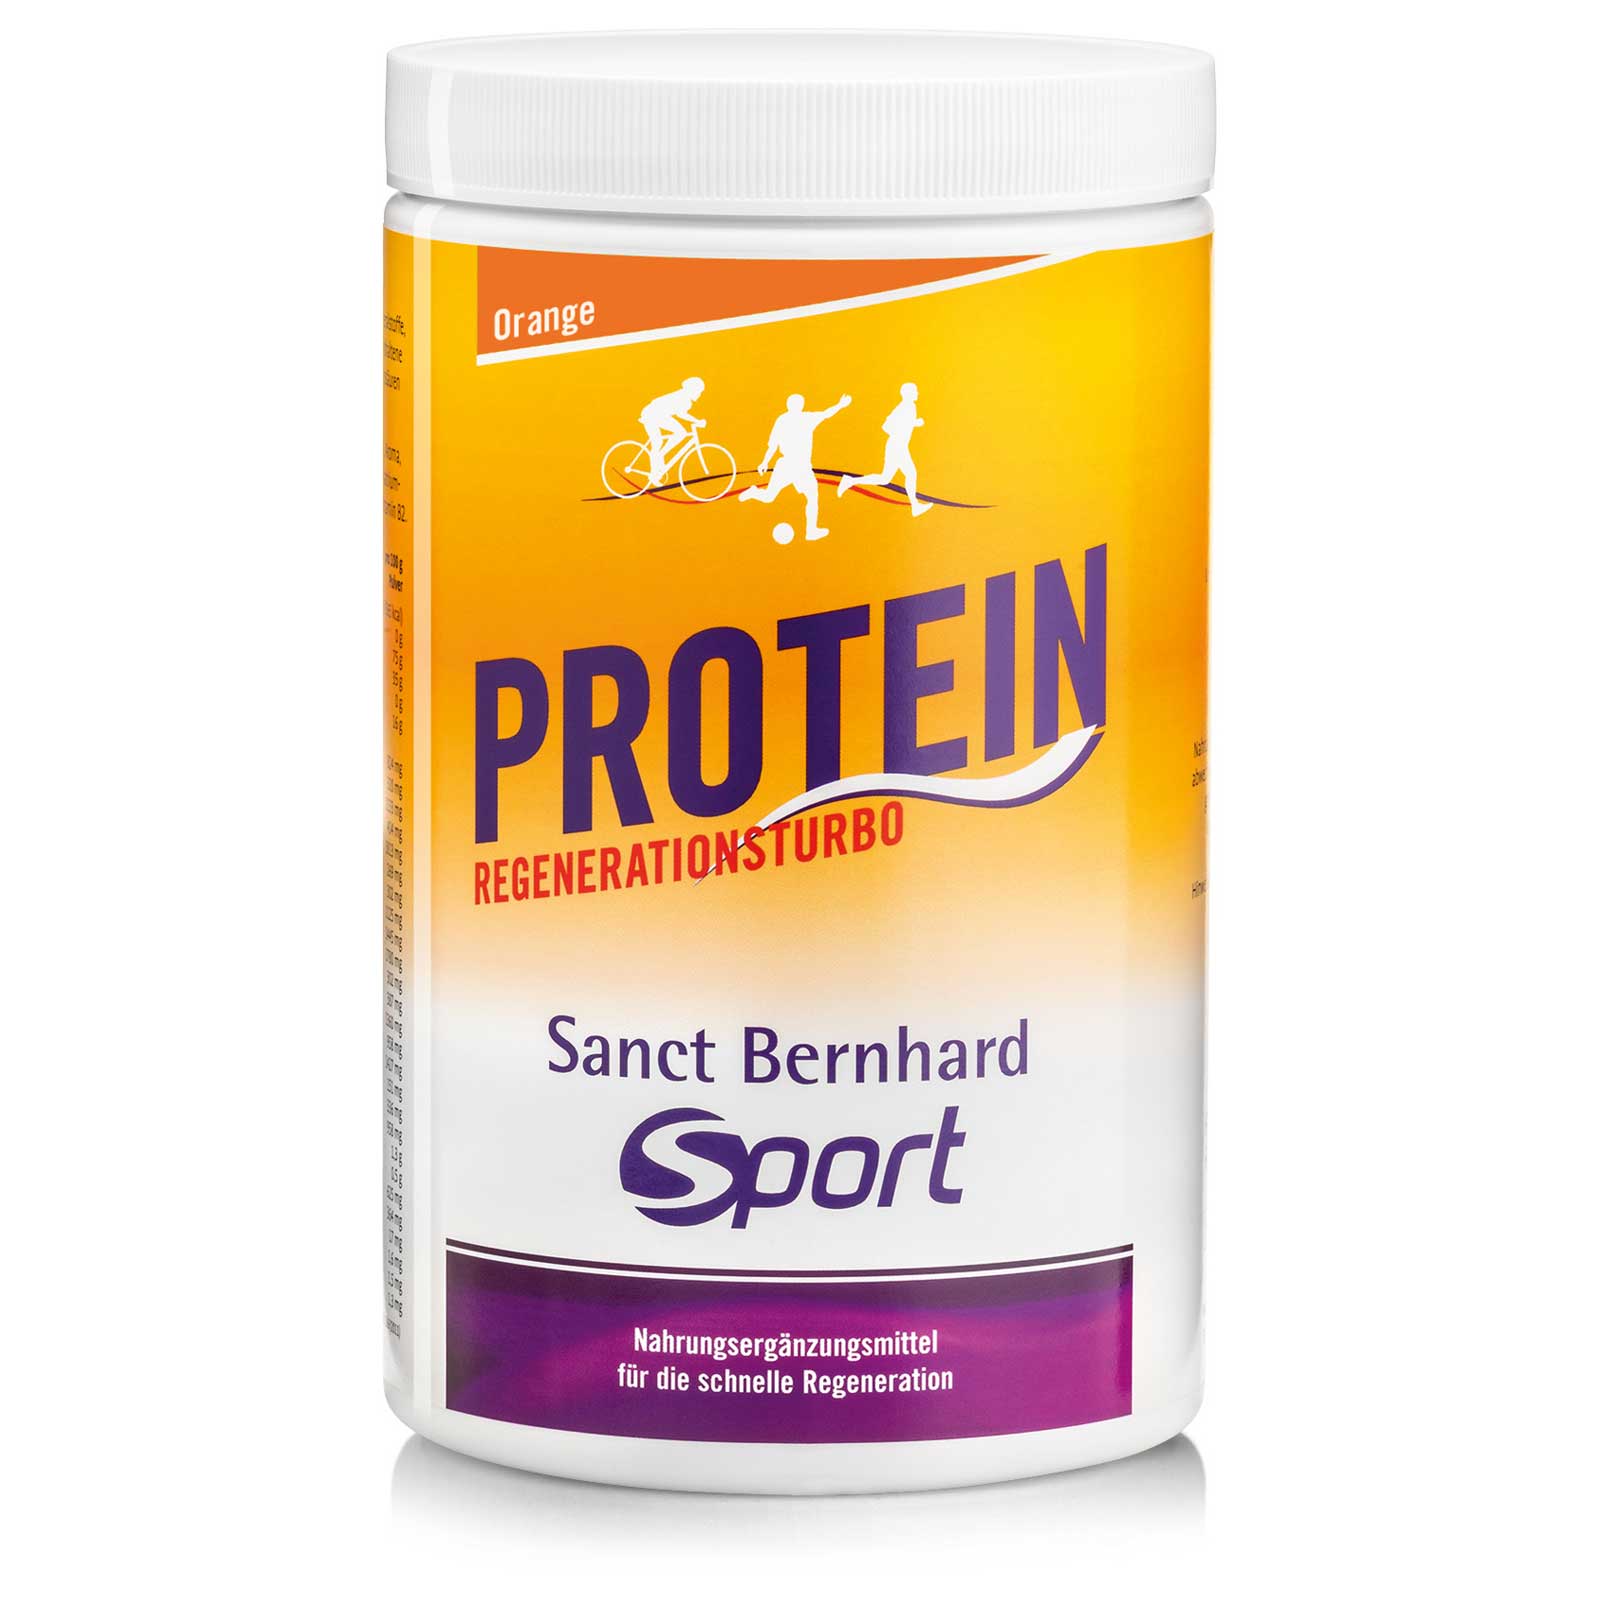 Productfoto van Sanct Bernhard Sport Protein Regeneration Turbo - Beverage Powder - 725g